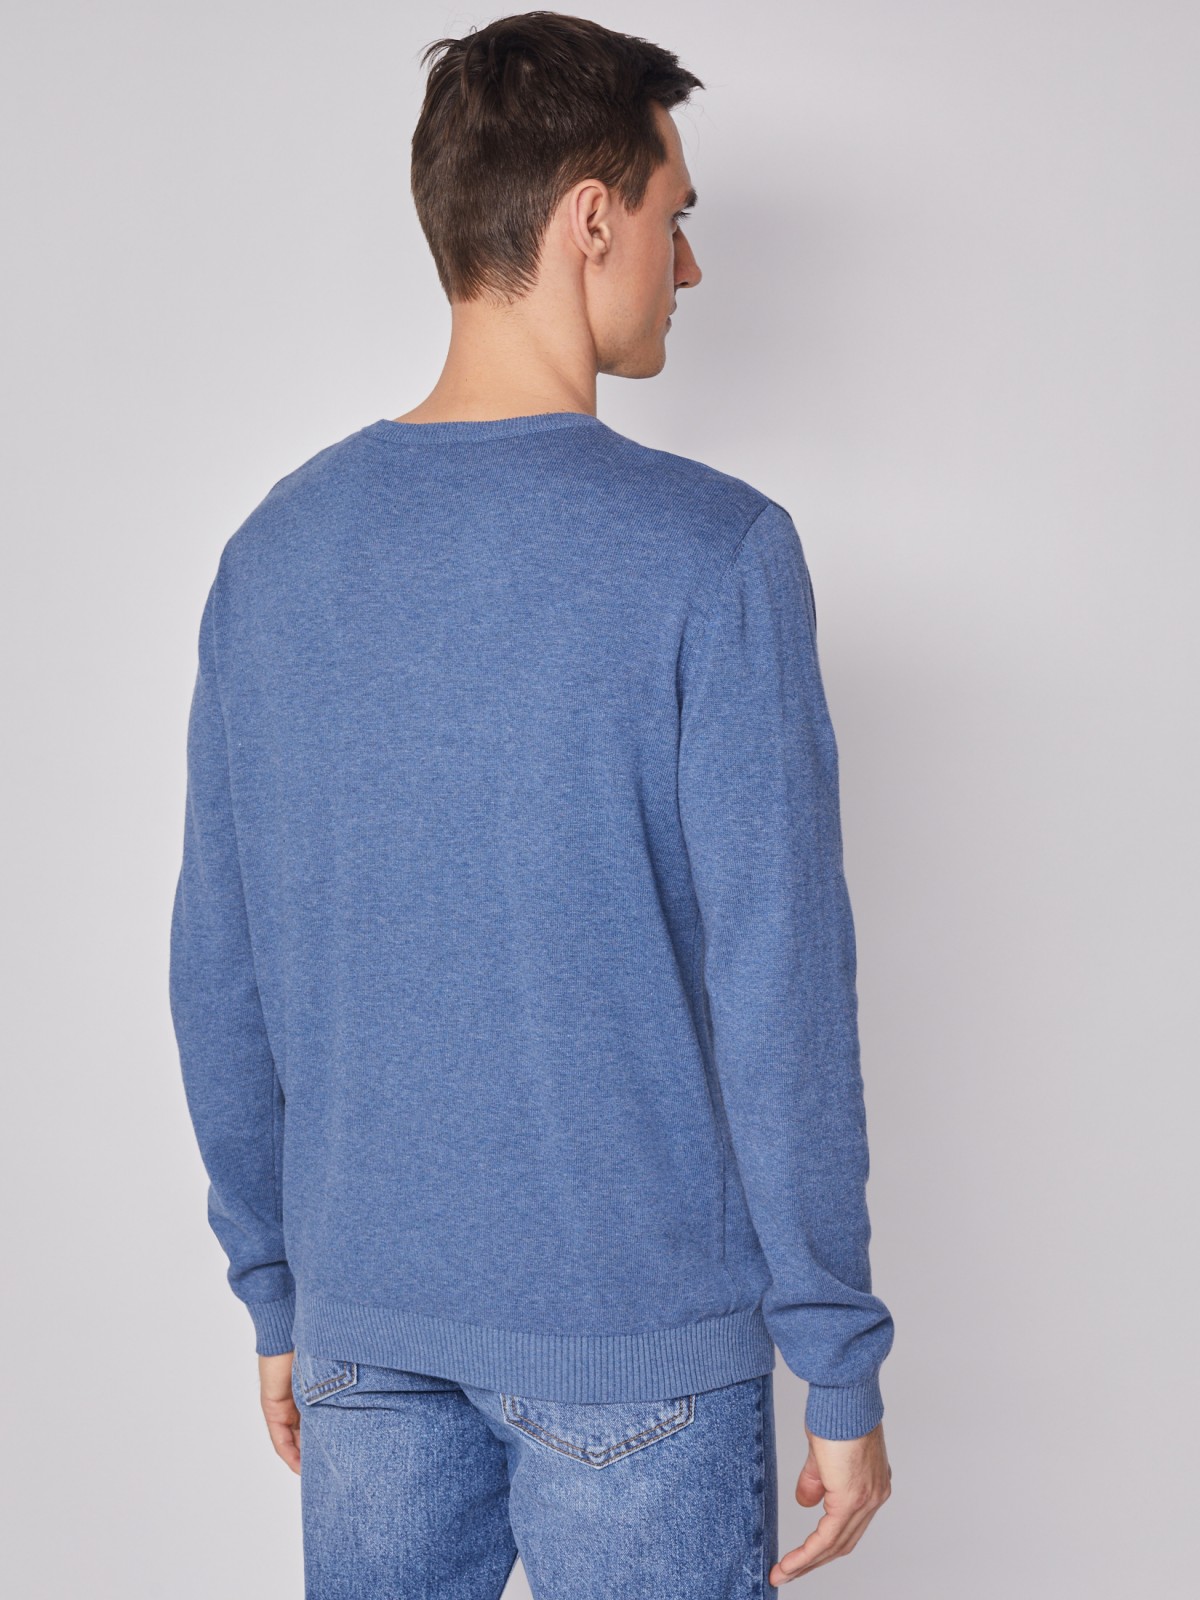 Комбинированный пуловер из хлопка zolla 212116765022, цвет голубой, размер M - фото 5